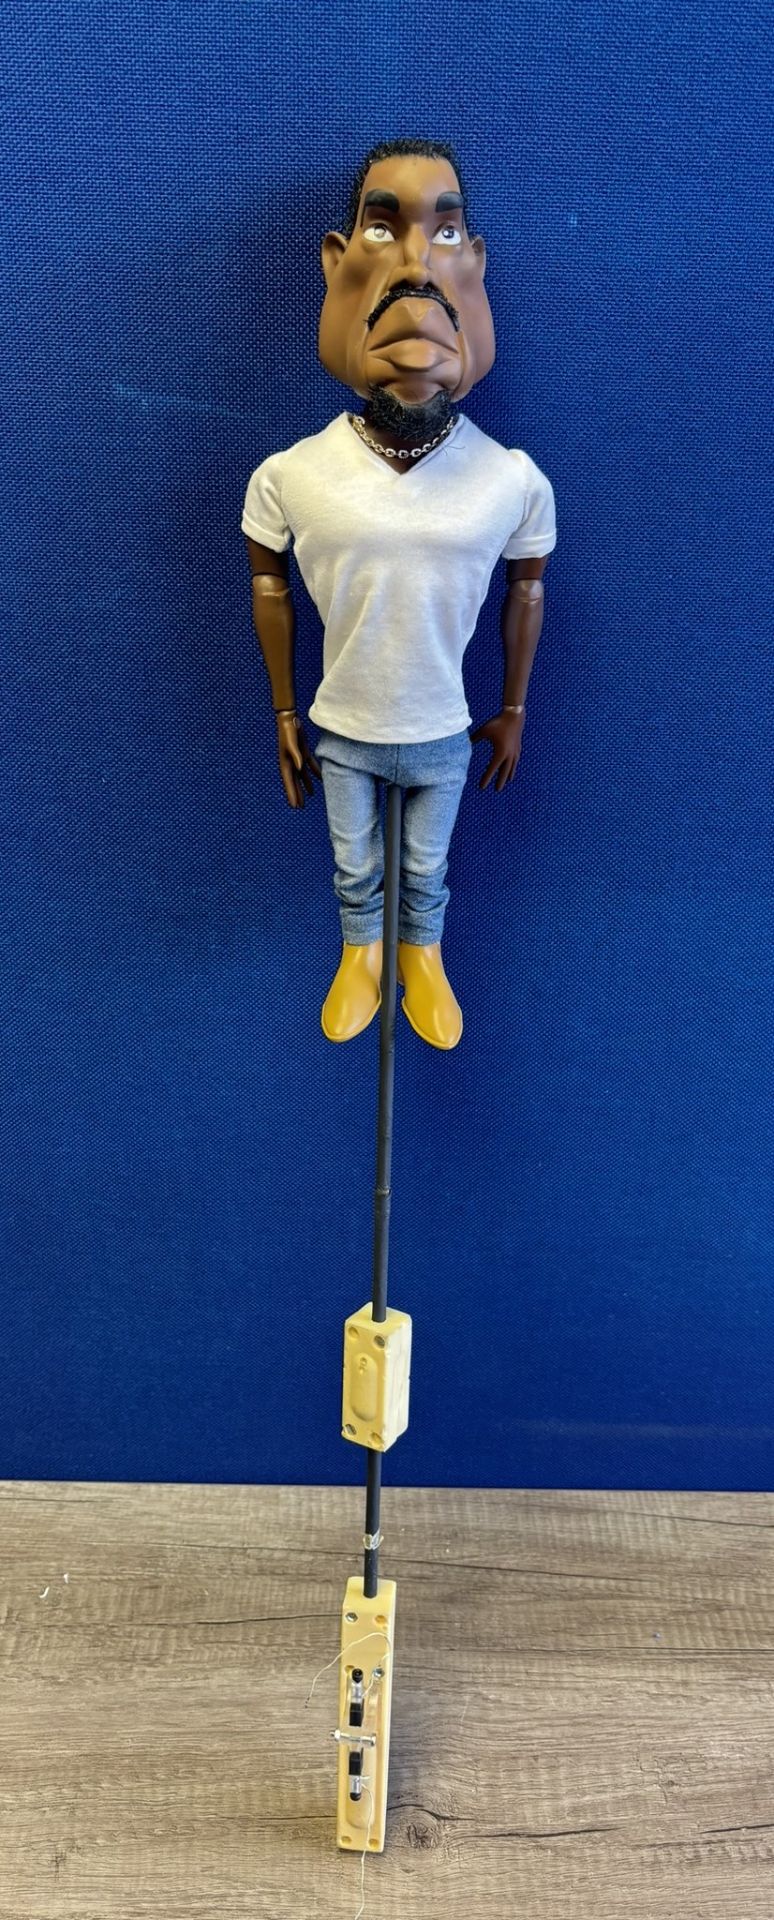 Newzoid puppet - Kanye West - Image 3 of 3